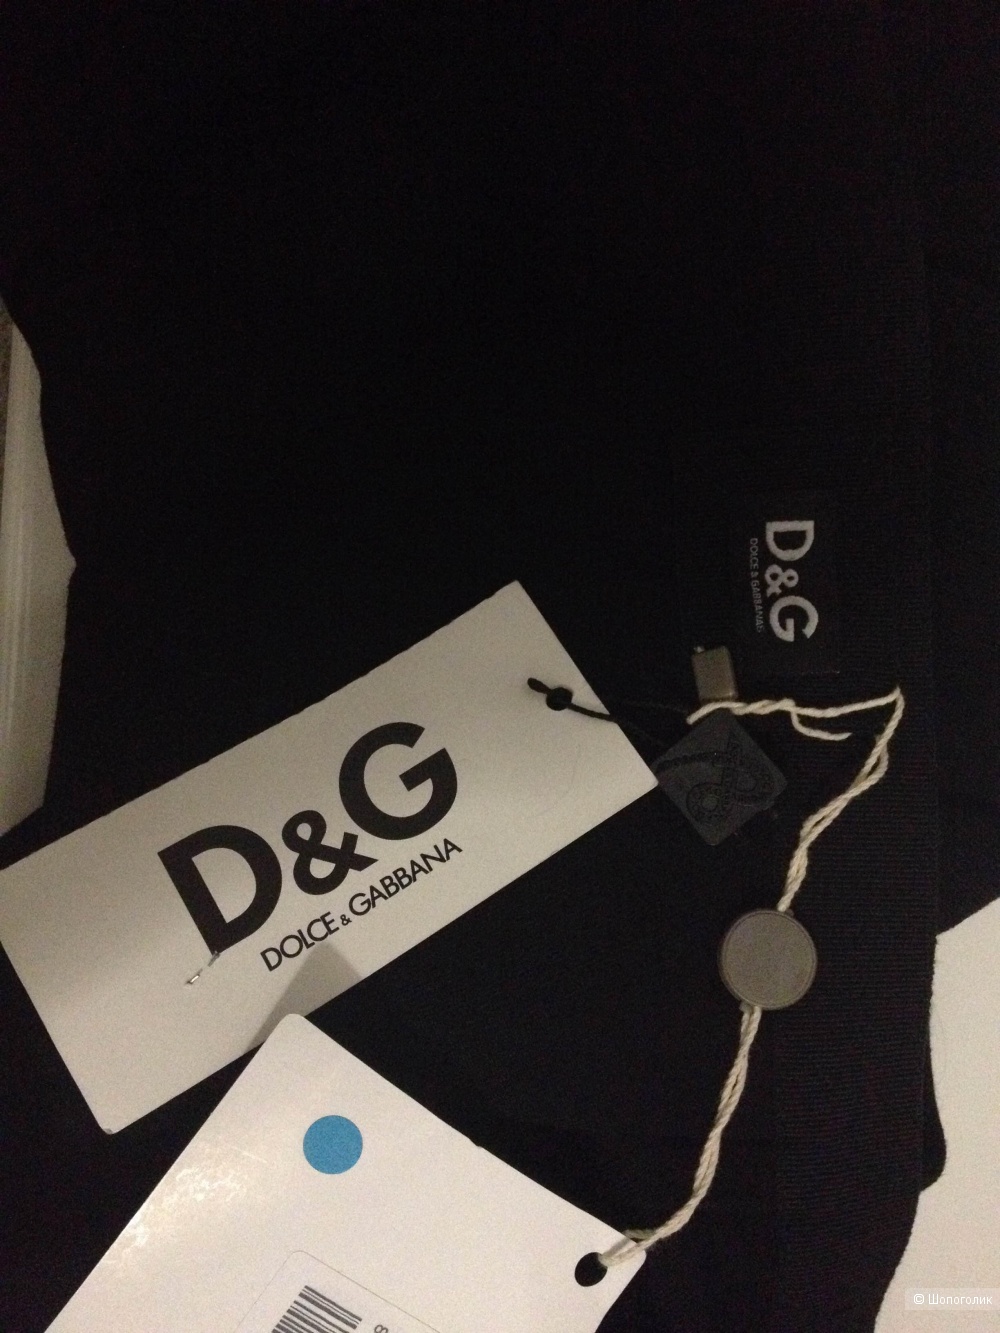 Шерстяная юбка D&G Dolce&Gabbana 44IT на росс. 46-48